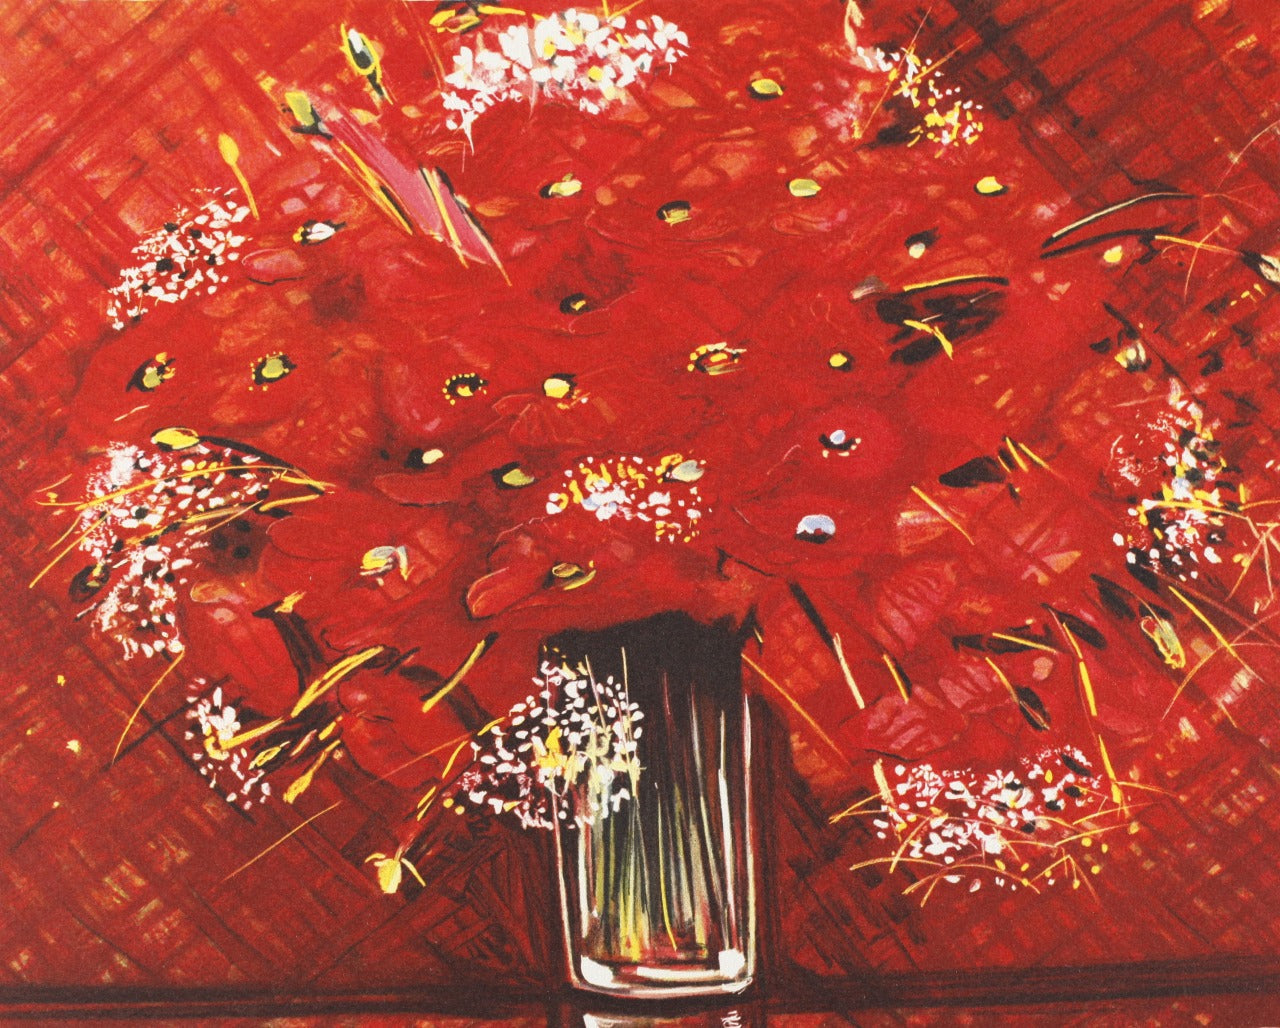 買い付けミッシェル・アンリ ★☆ 赤い花束 サイン有り リトグラフ 額装品 美術品 絵画 絵 額のサイズ、横幅 約69.7㎝ 高さ約61.5㎝ 石版画、リトグラフ